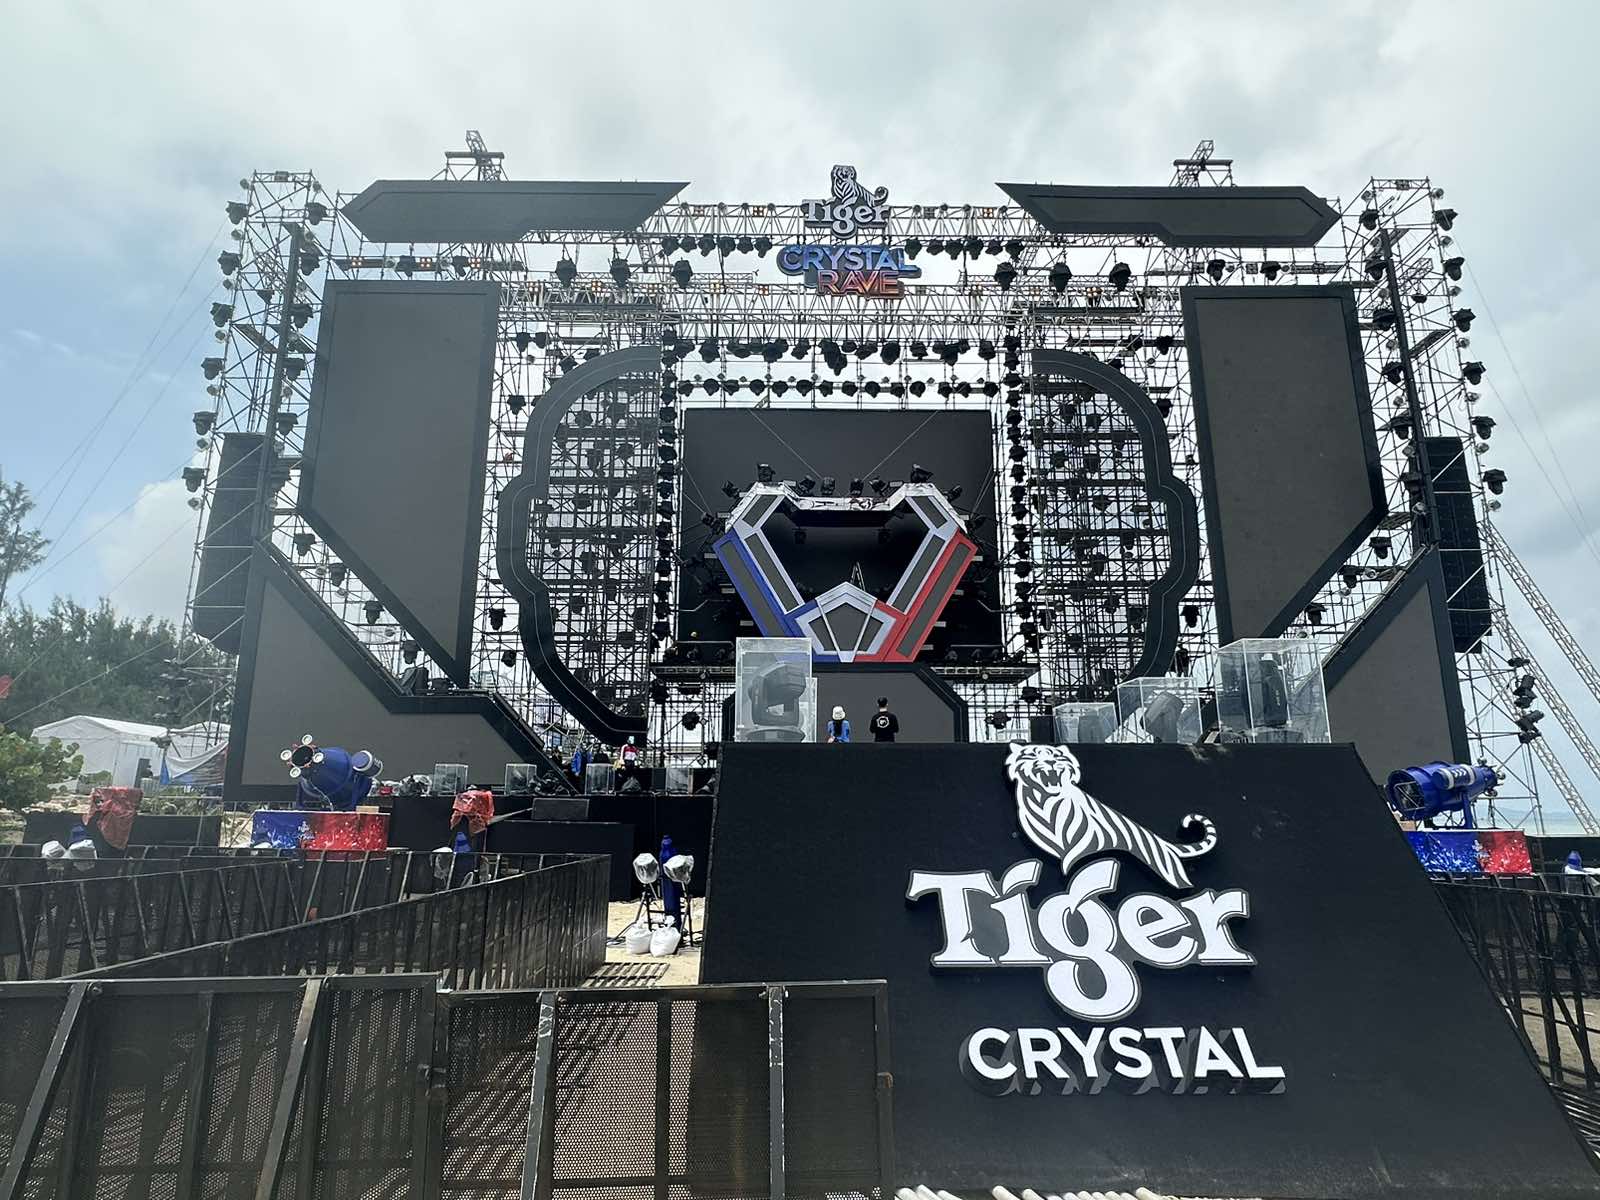 1 ngày trước giờ G: hình ảnh đầu tiên cho đại tiệc quẩy “ướt không lối về” - Tiger Crystal Rave 2.0 - Ảnh 2.